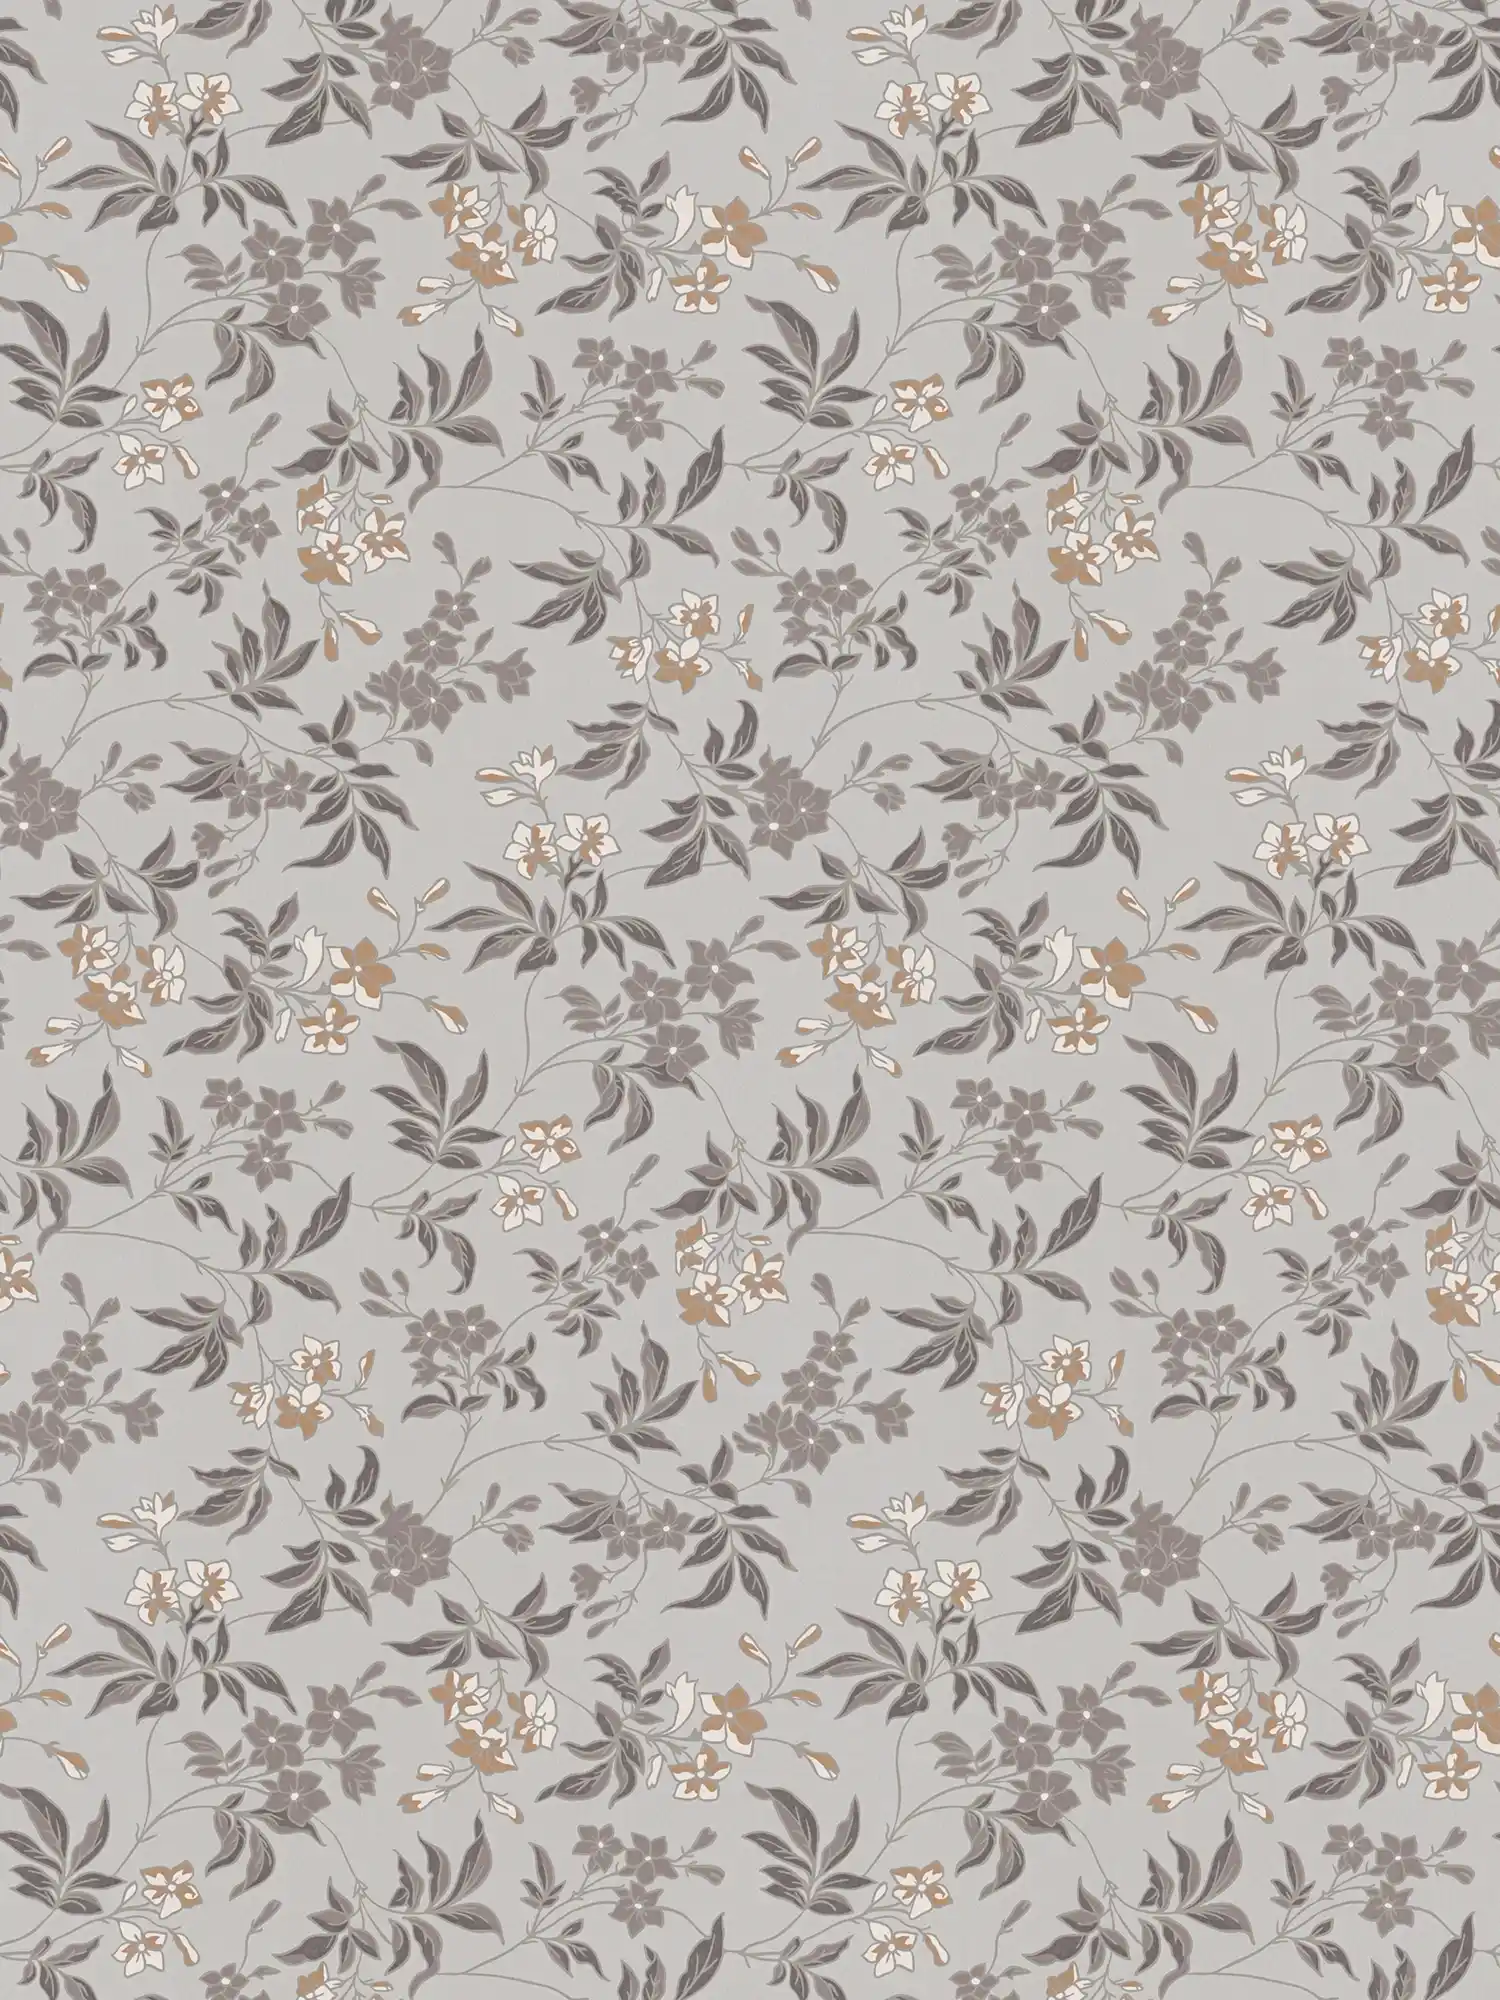         Bloemrijk en ranken in bloemenpatroon - grijs, bruin, wit
    